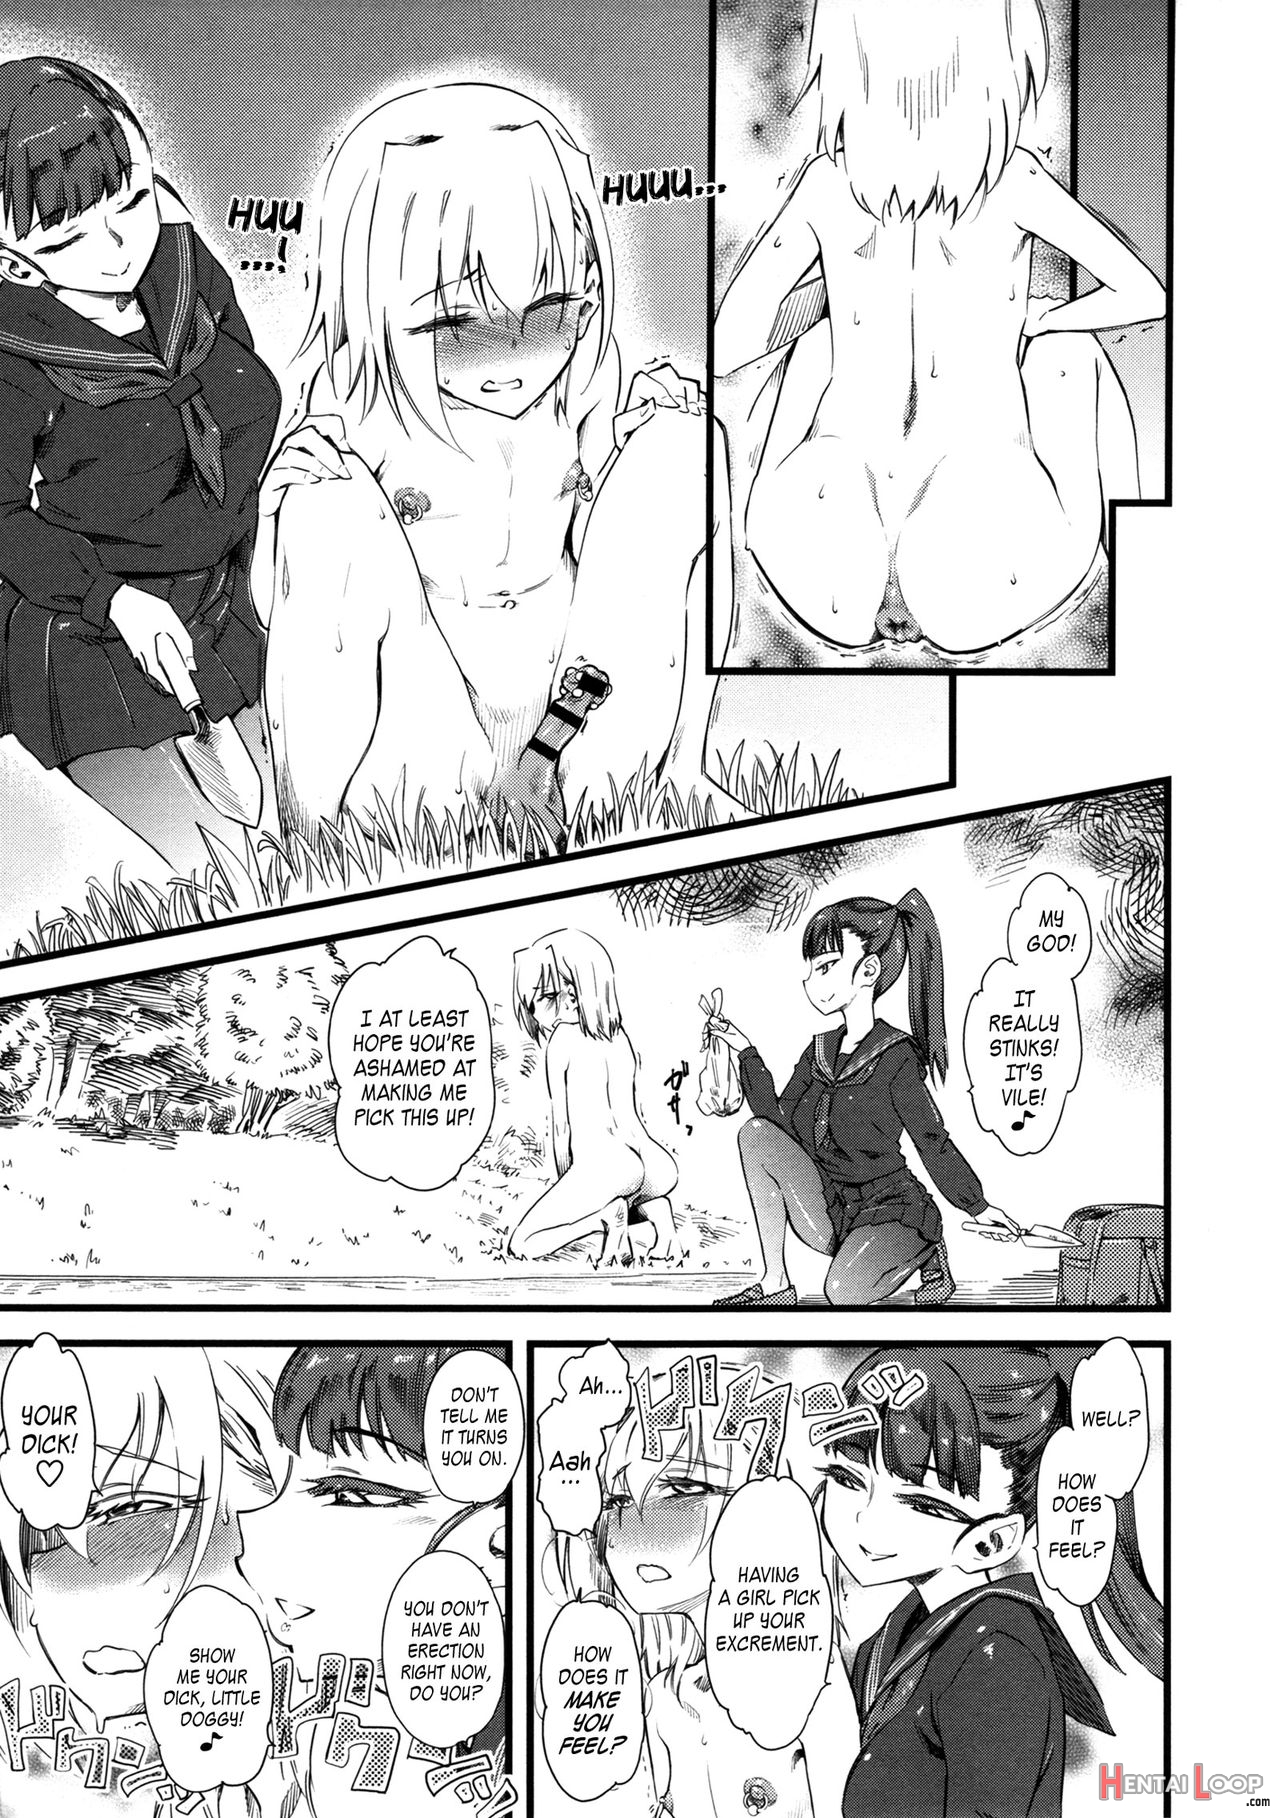 Naburi Furoku page 5